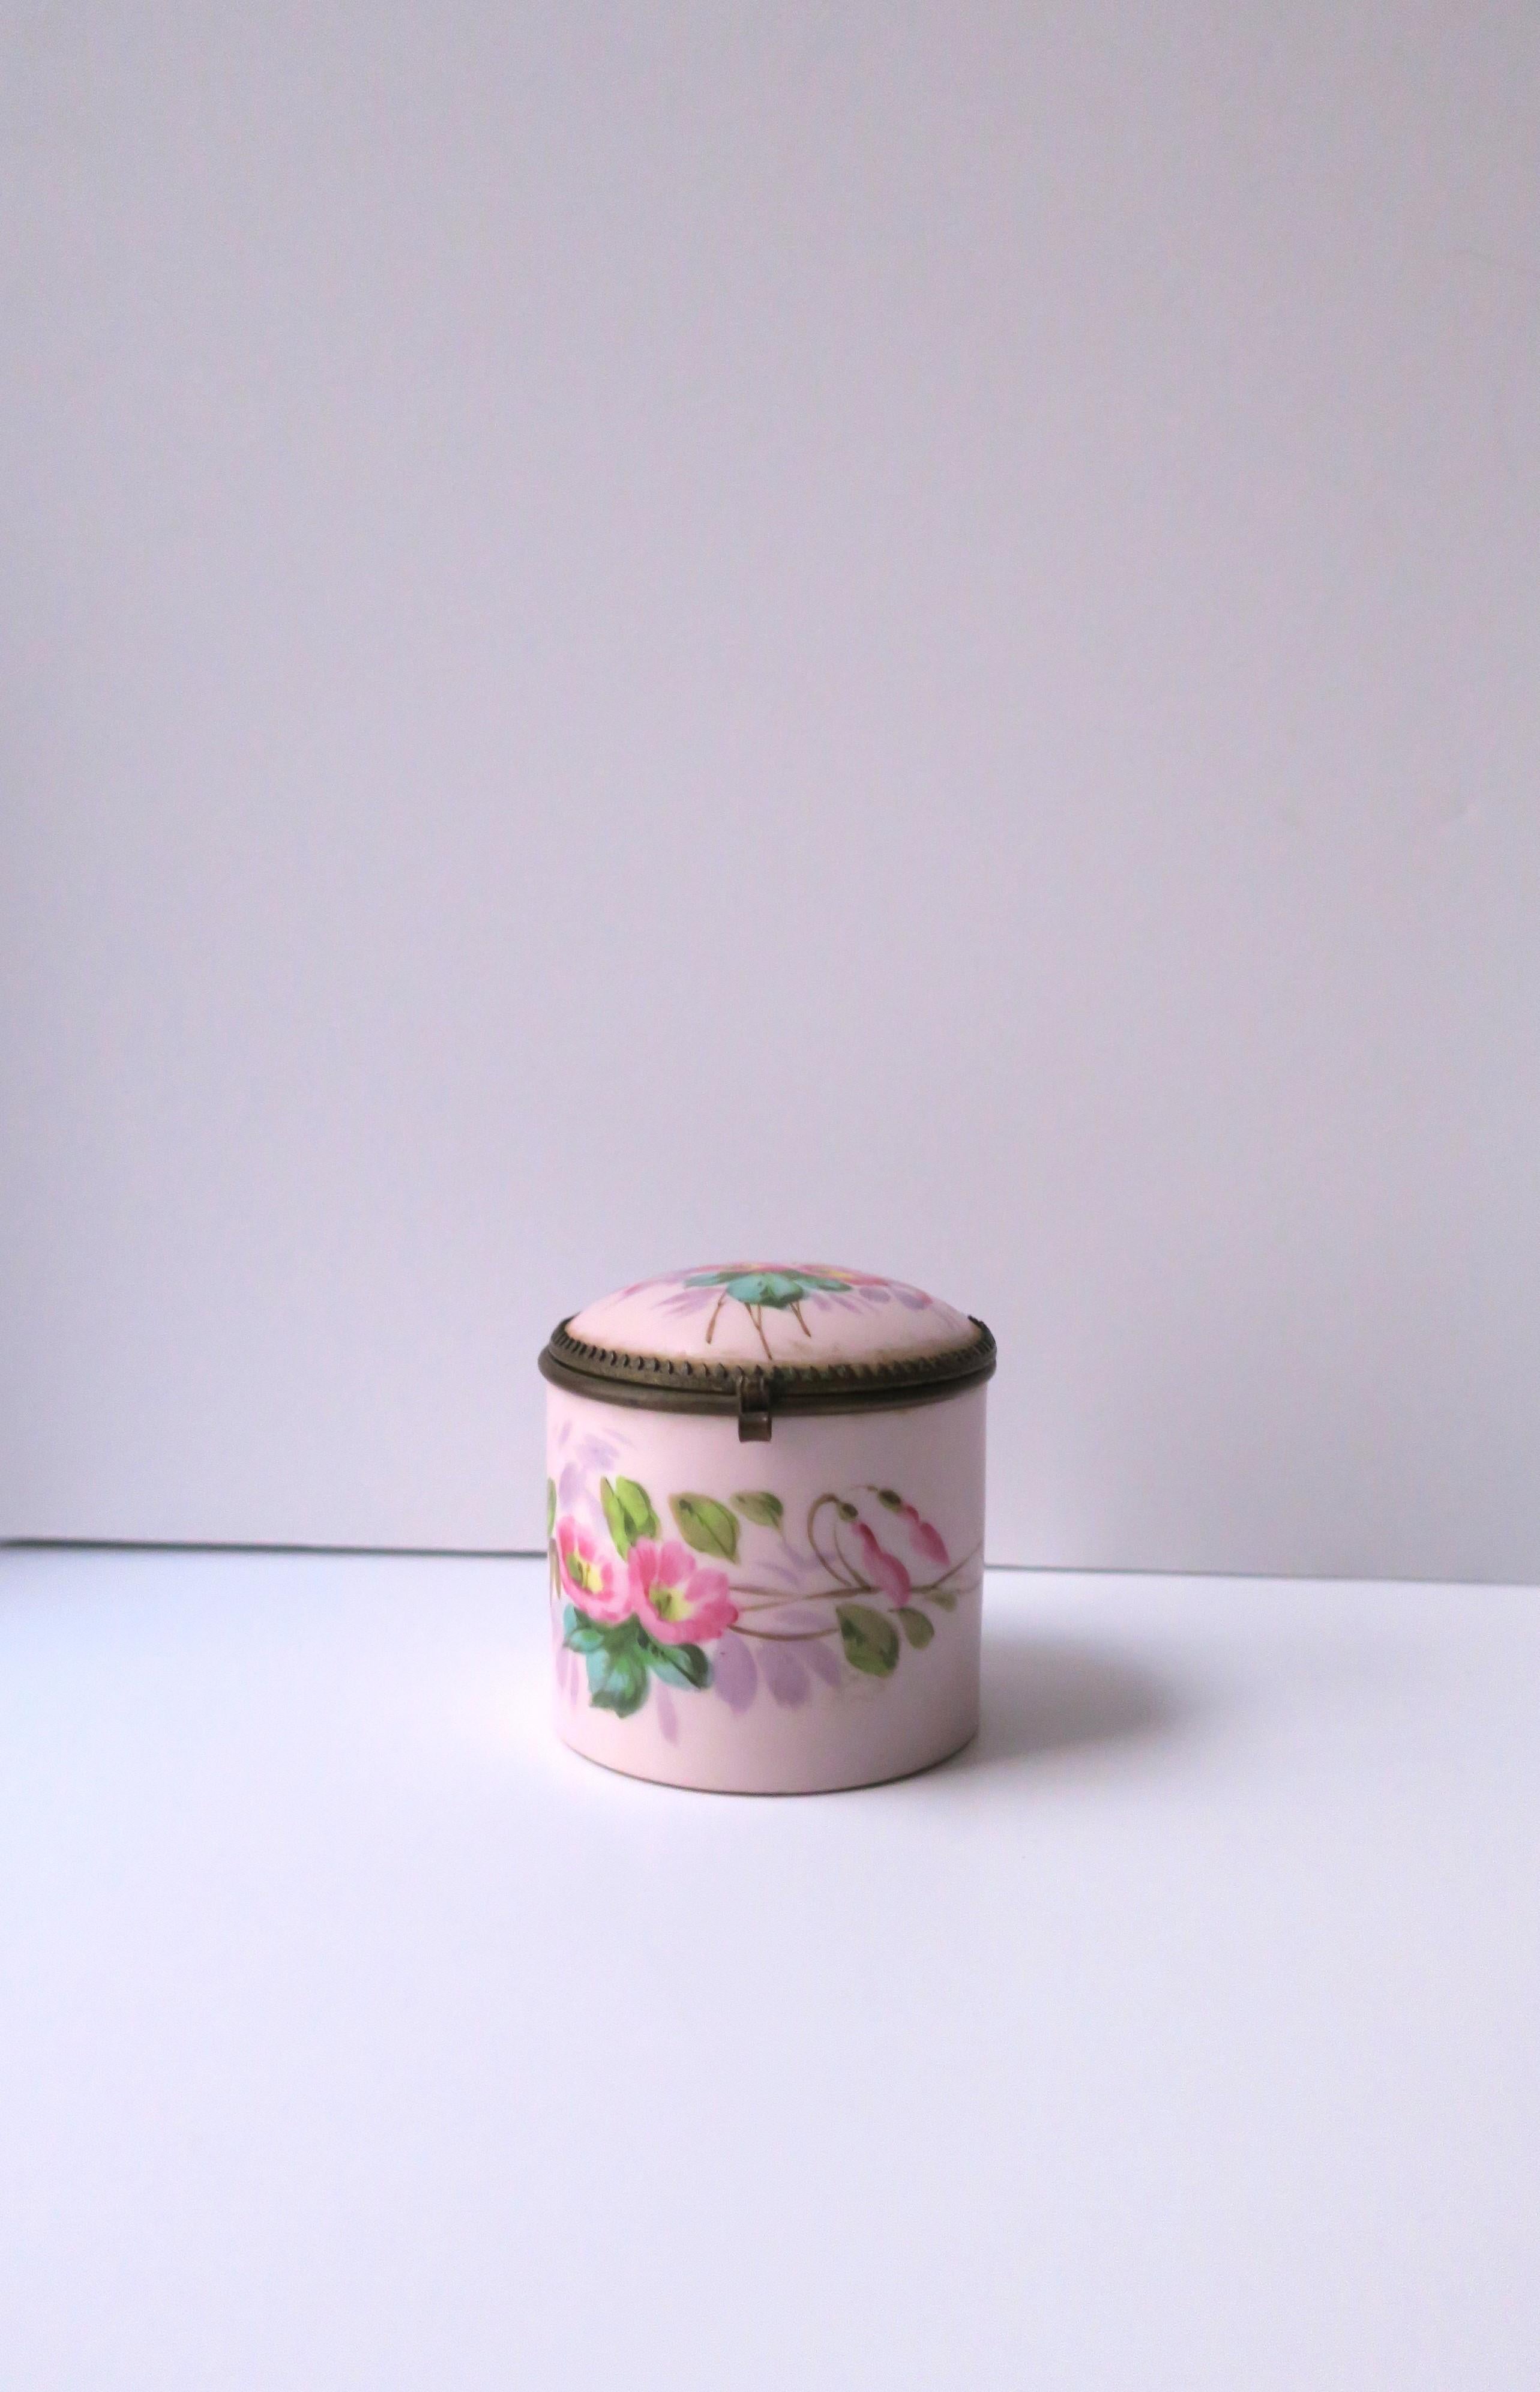 Boîte ancienne en porcelaine à motif floral en chintz, vers le début du 20e siècle, Europe. Cette boîte en porcelaine est dotée d'un couvercle à charnière et d'un intérieur entièrement blanc. L'extérieur est entouré de fleurs et de feuilles peintes